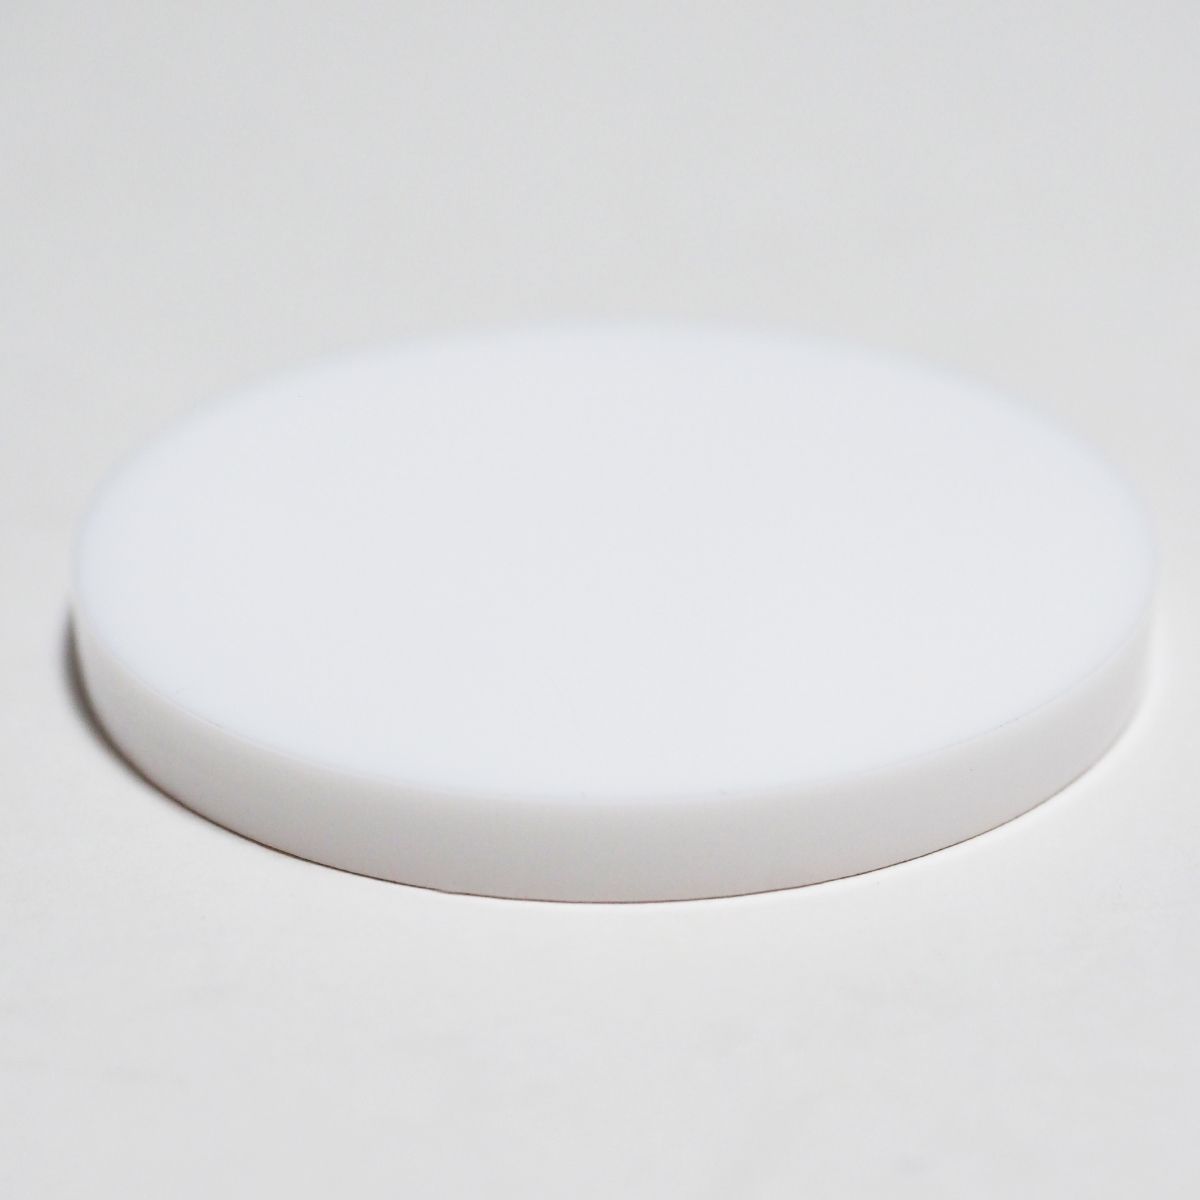 白 アクリル 5mm厚 円形 直径5cm 4個セット - メルカリ